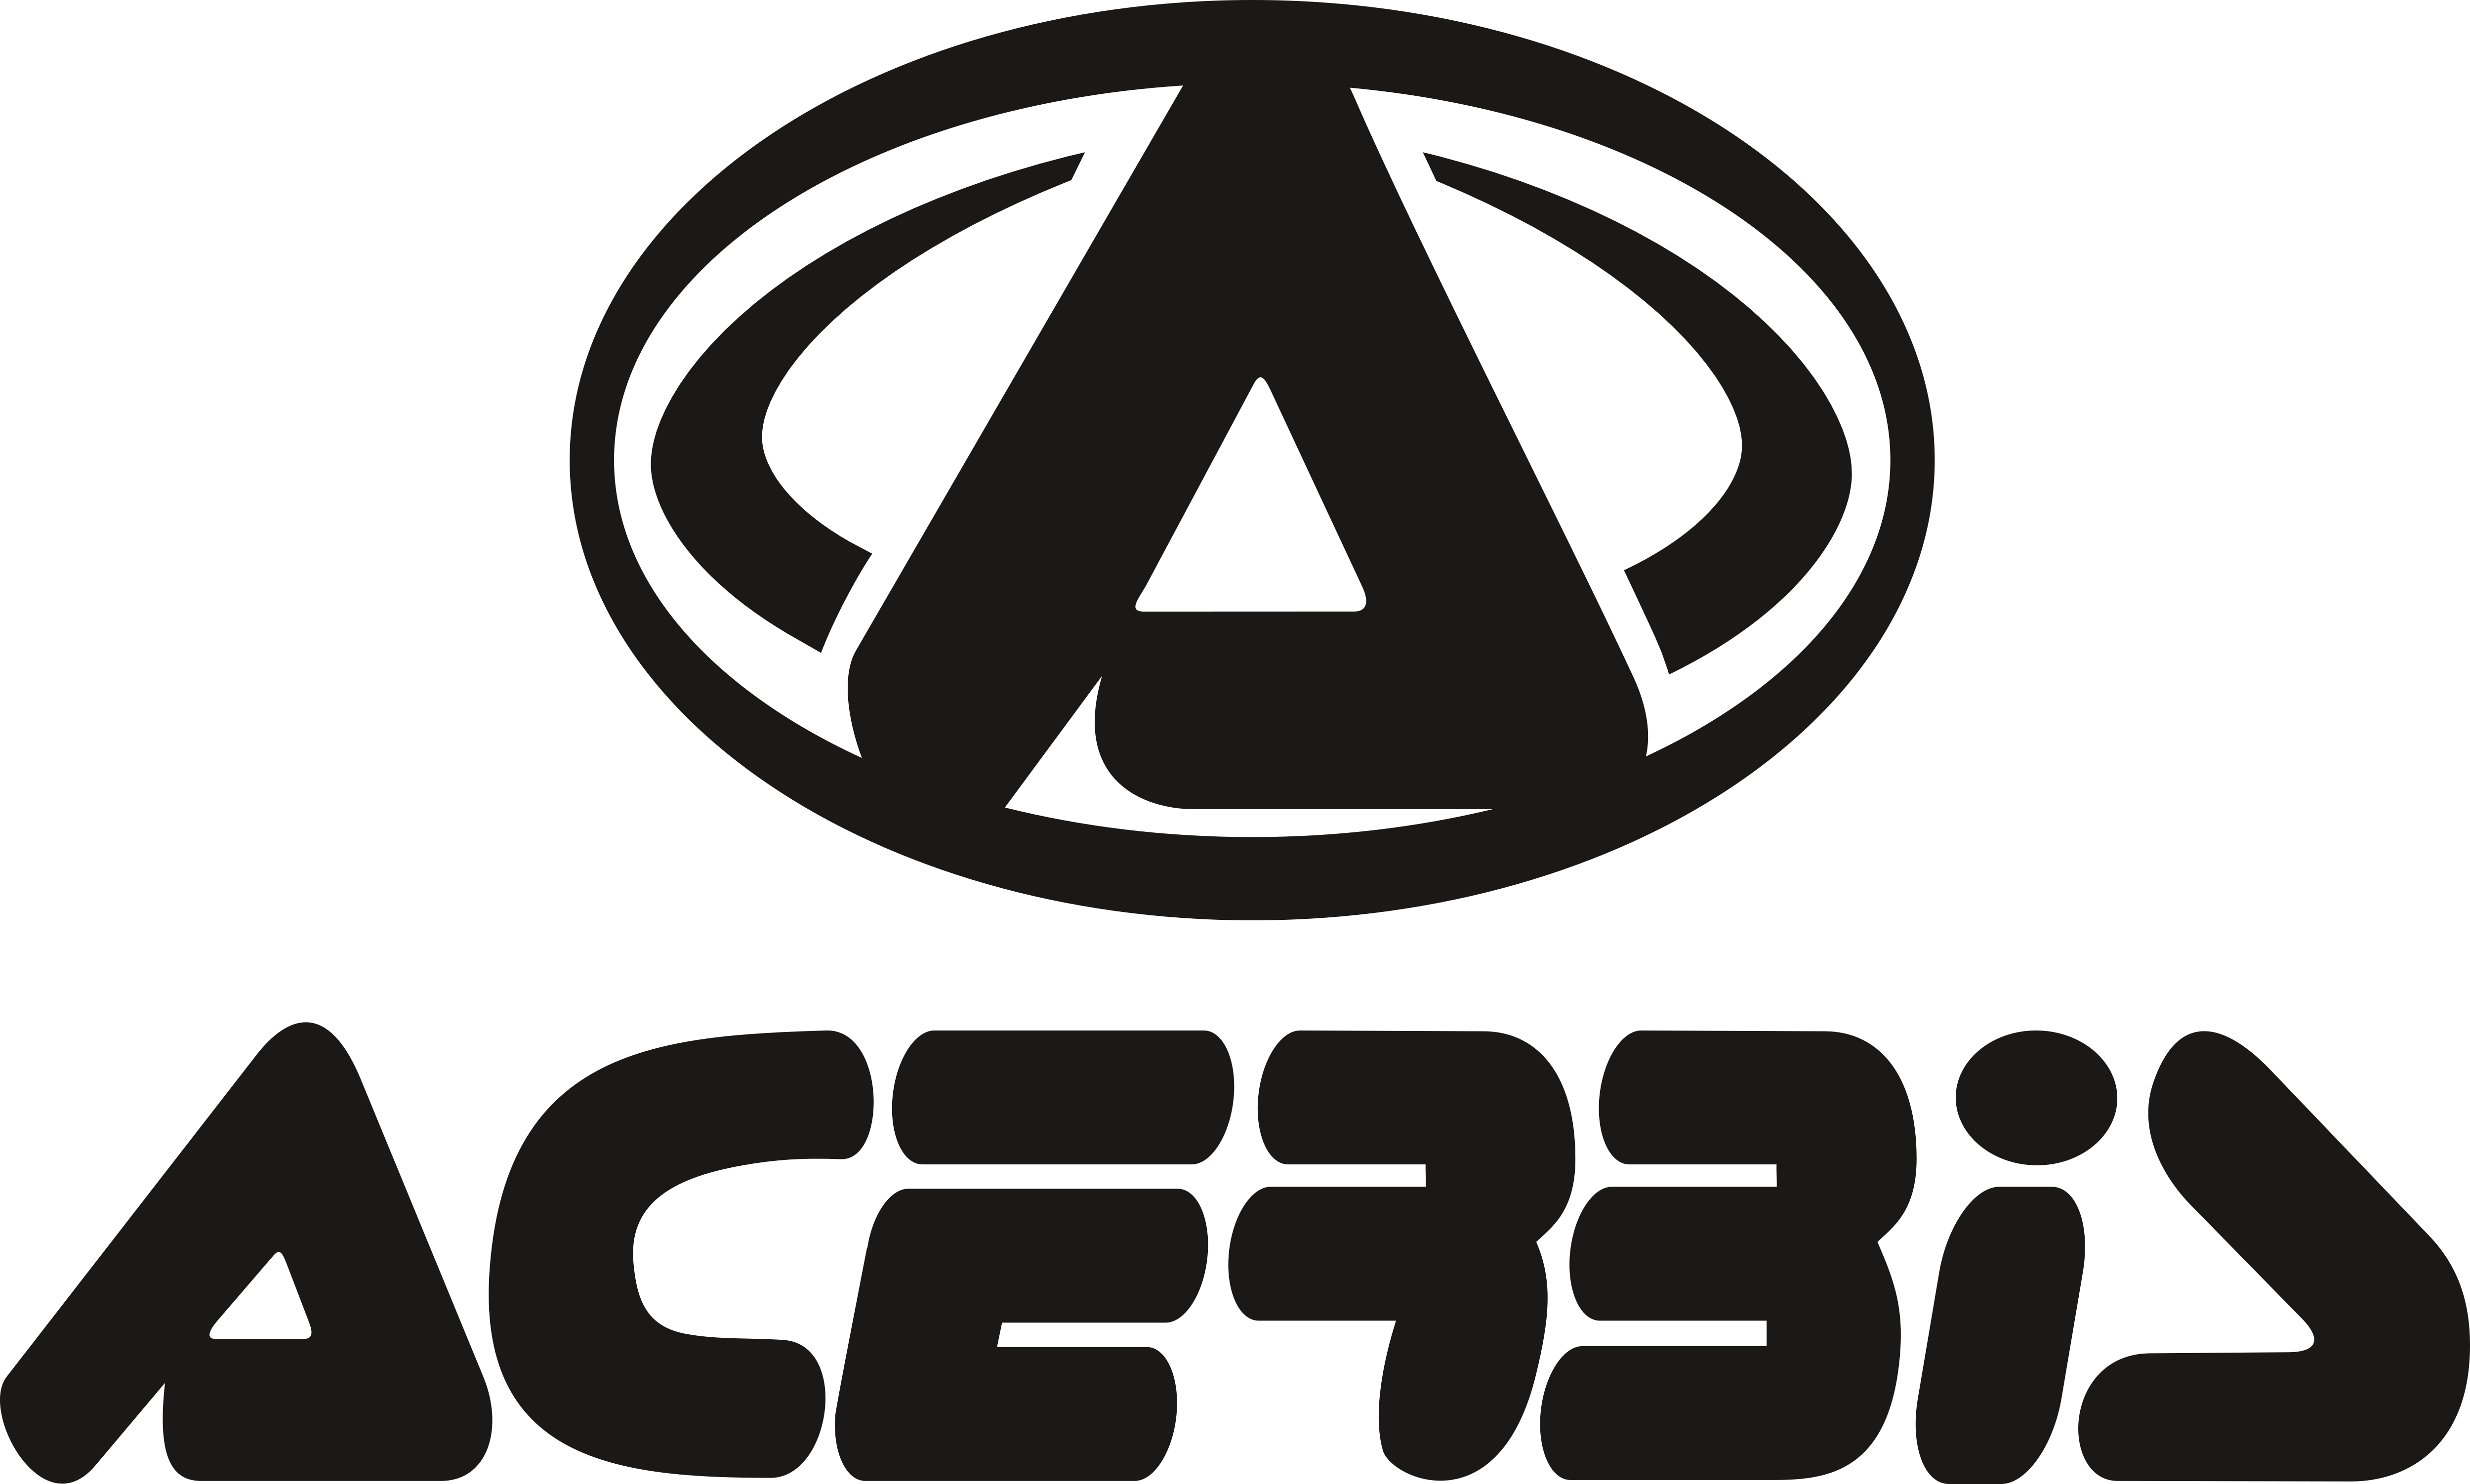 Acerbis Logo - Acerbis – Logos Download